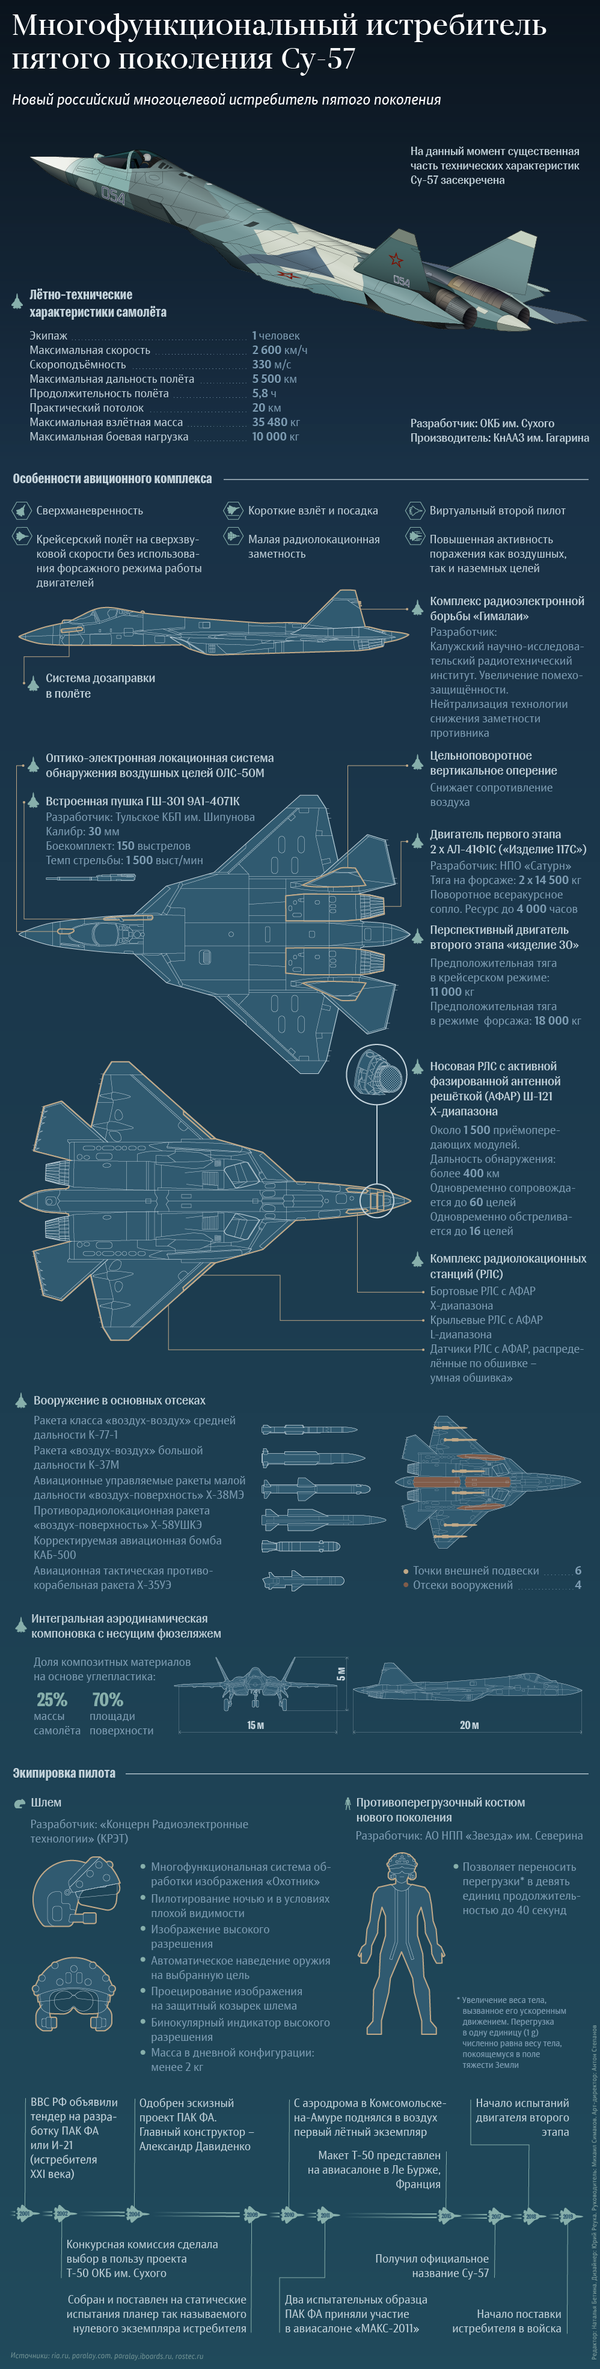 Многофункциональный истребитель пятого поколения Су-57 – инфографика на sputnik.by - Sputnik Беларусь